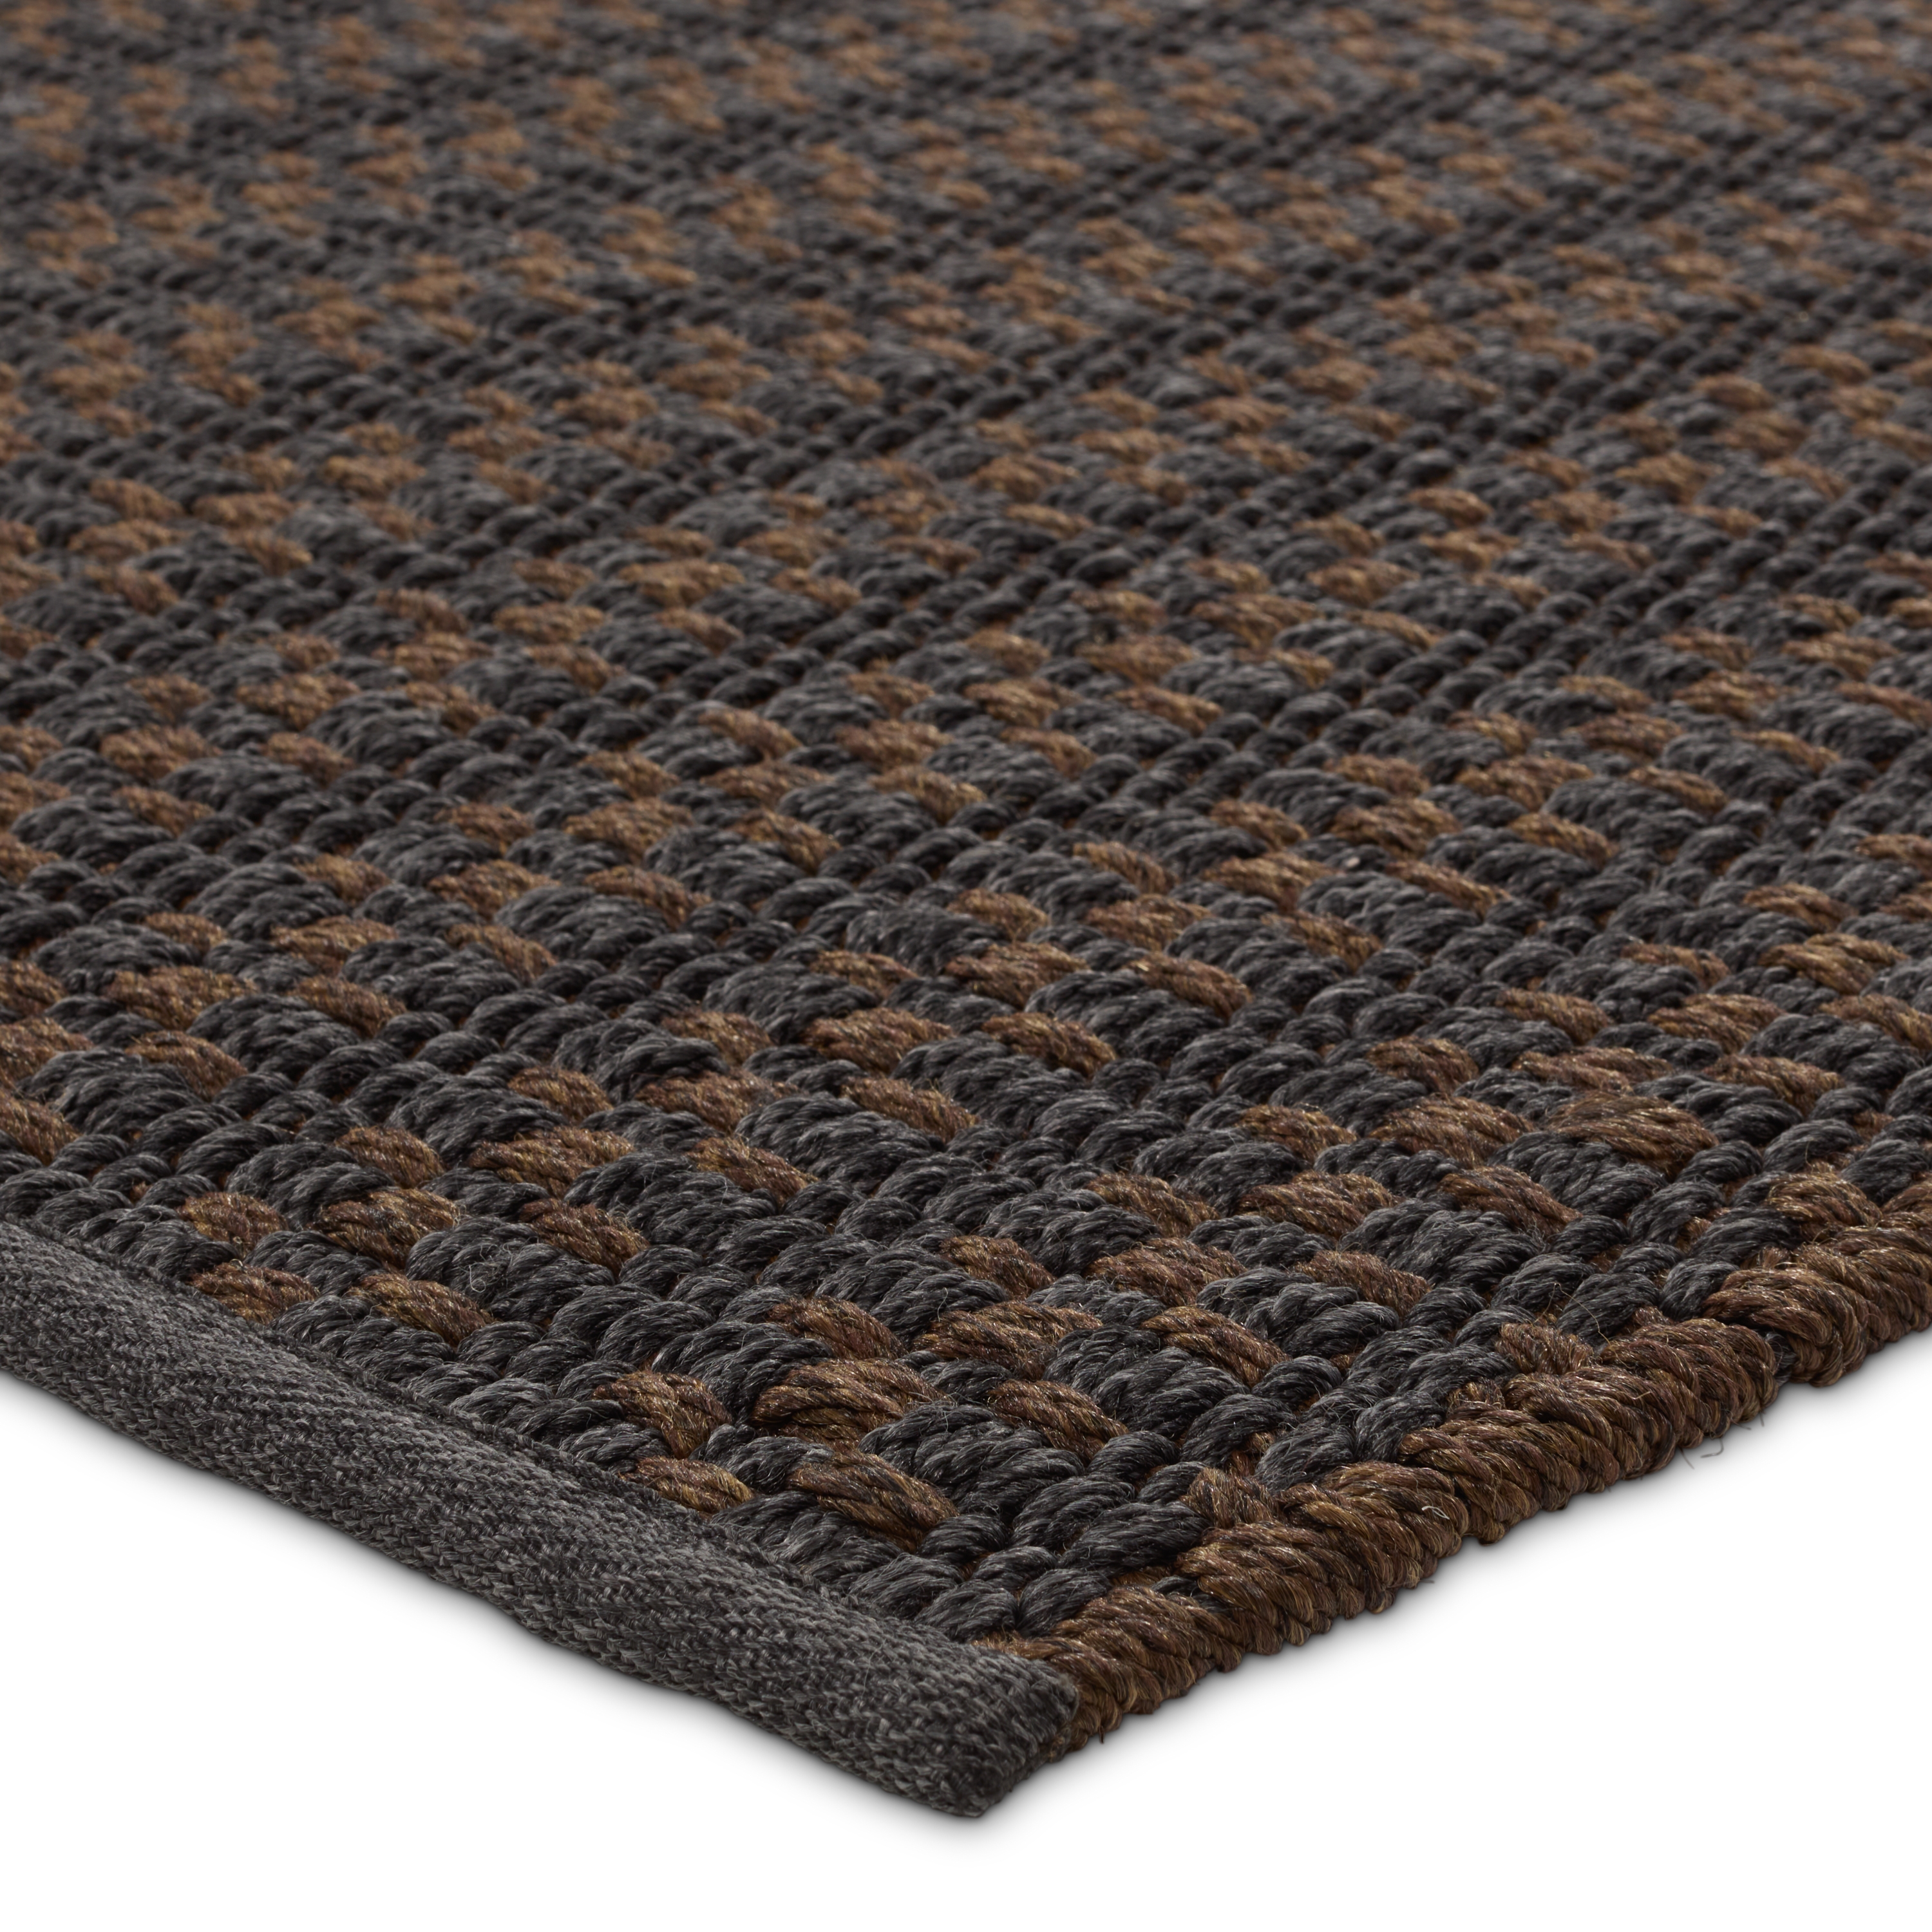 Elmas Handmade Indoor/Outdoor Striped Gray/Brown Area Rug (8'X10') - Image 1